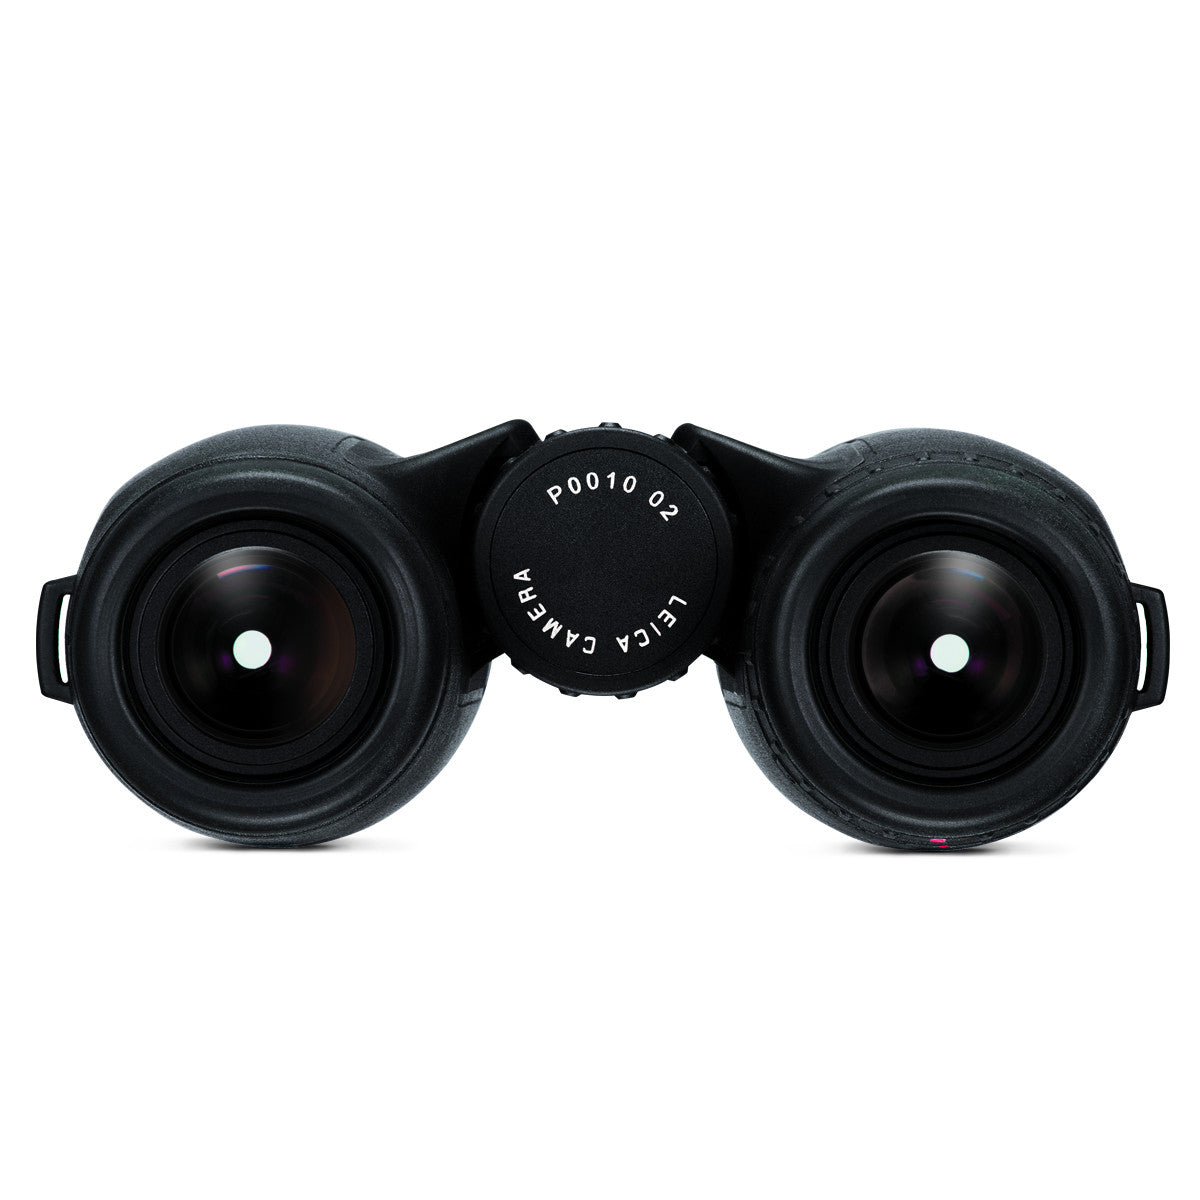 Leica Trinovid 10x42 HD Binocular - goHUNT Shop